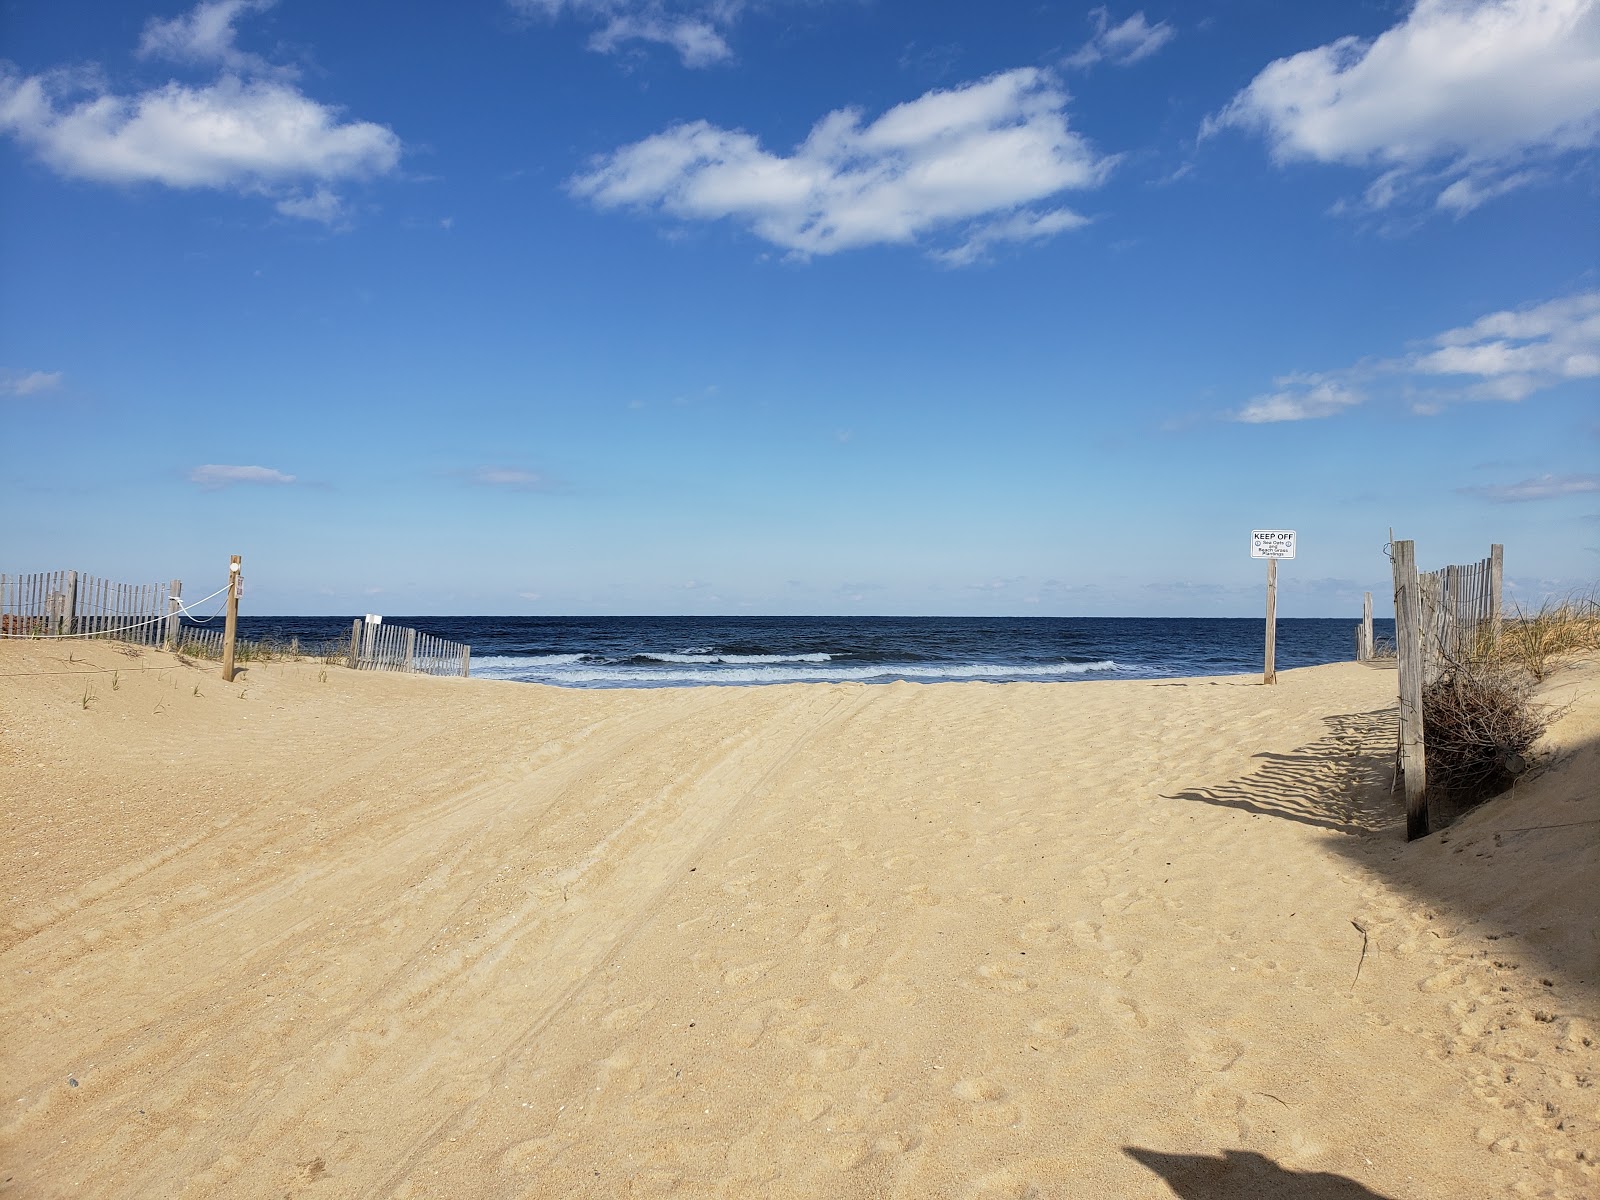 Zdjęcie Avalon Pier beach - popularne miejsce wśród znawców relaksu